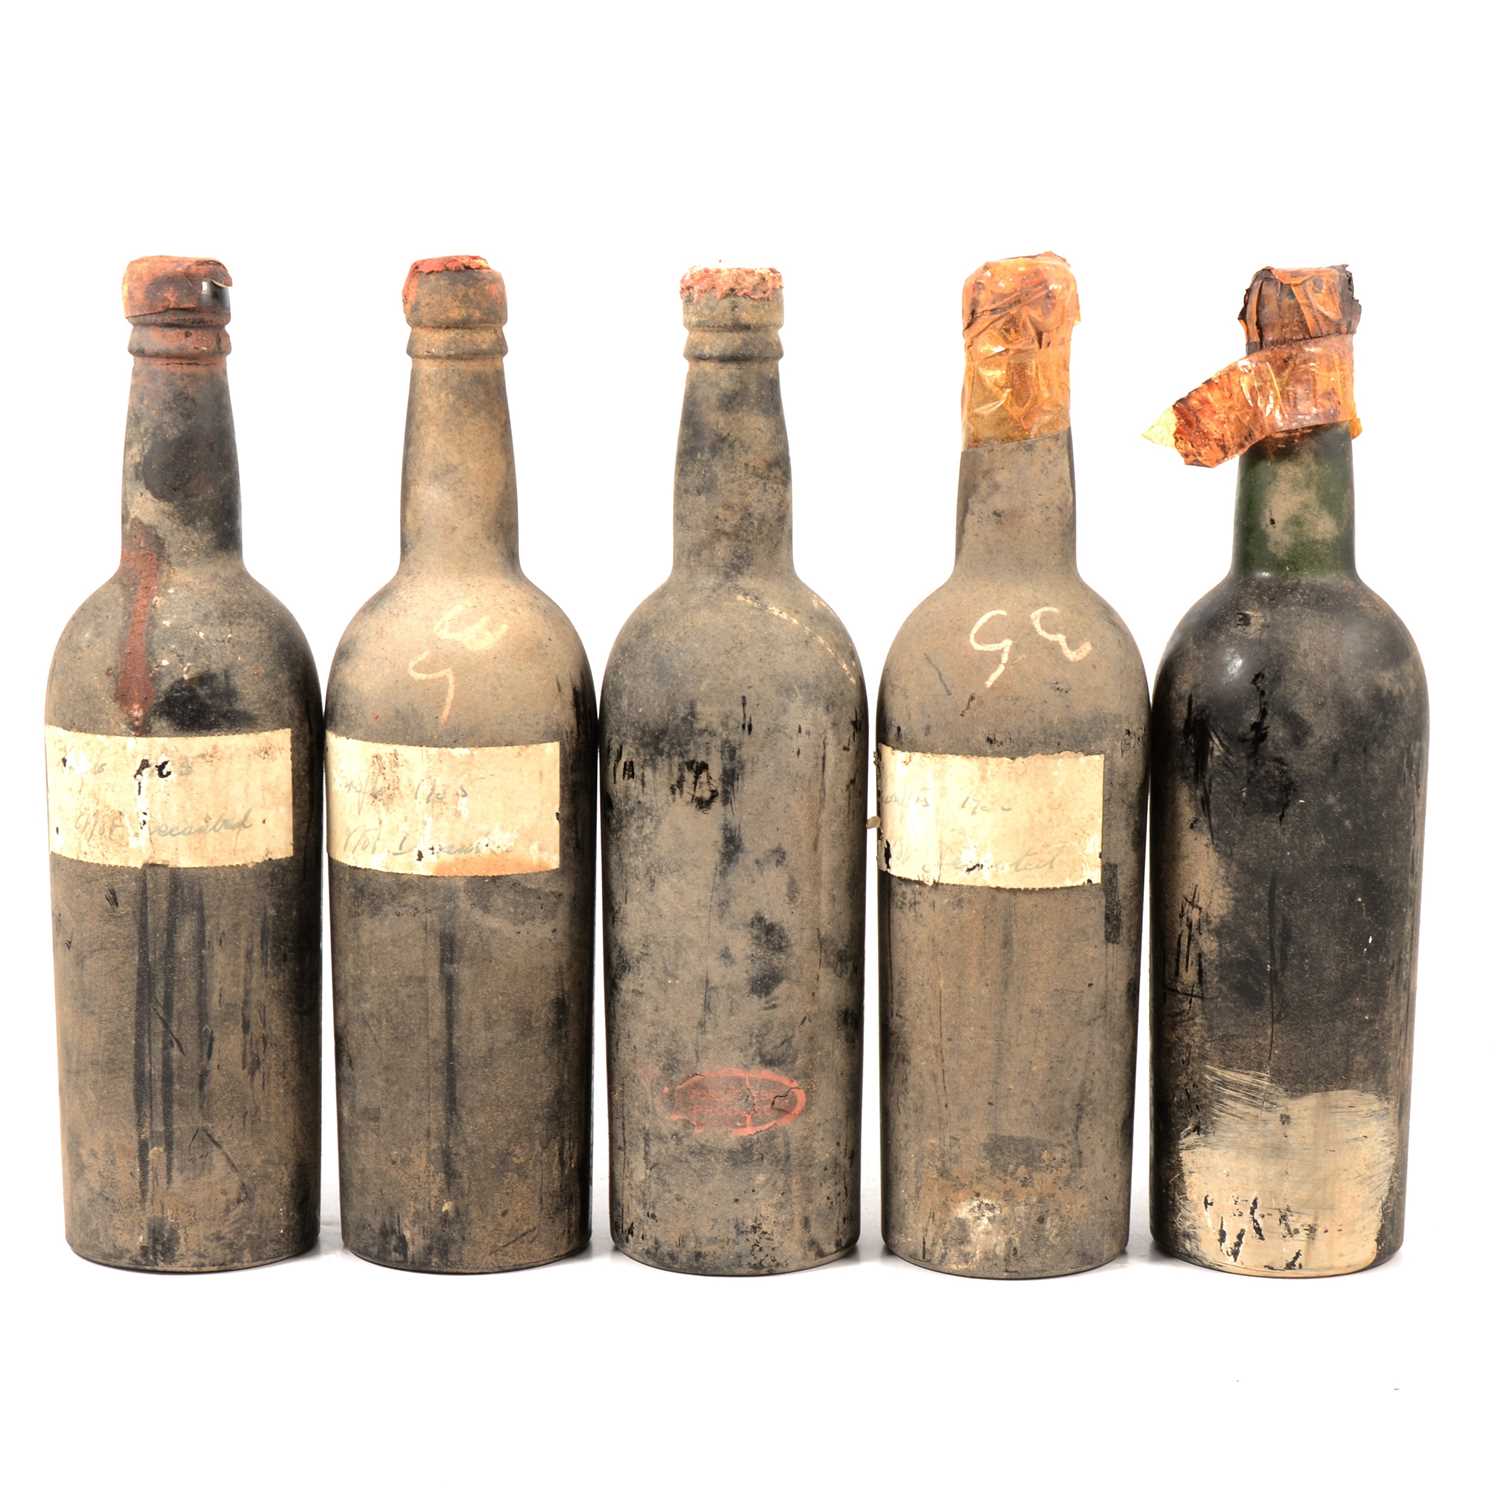 Five bottles of unknown vintage port, possibly Croft 1935